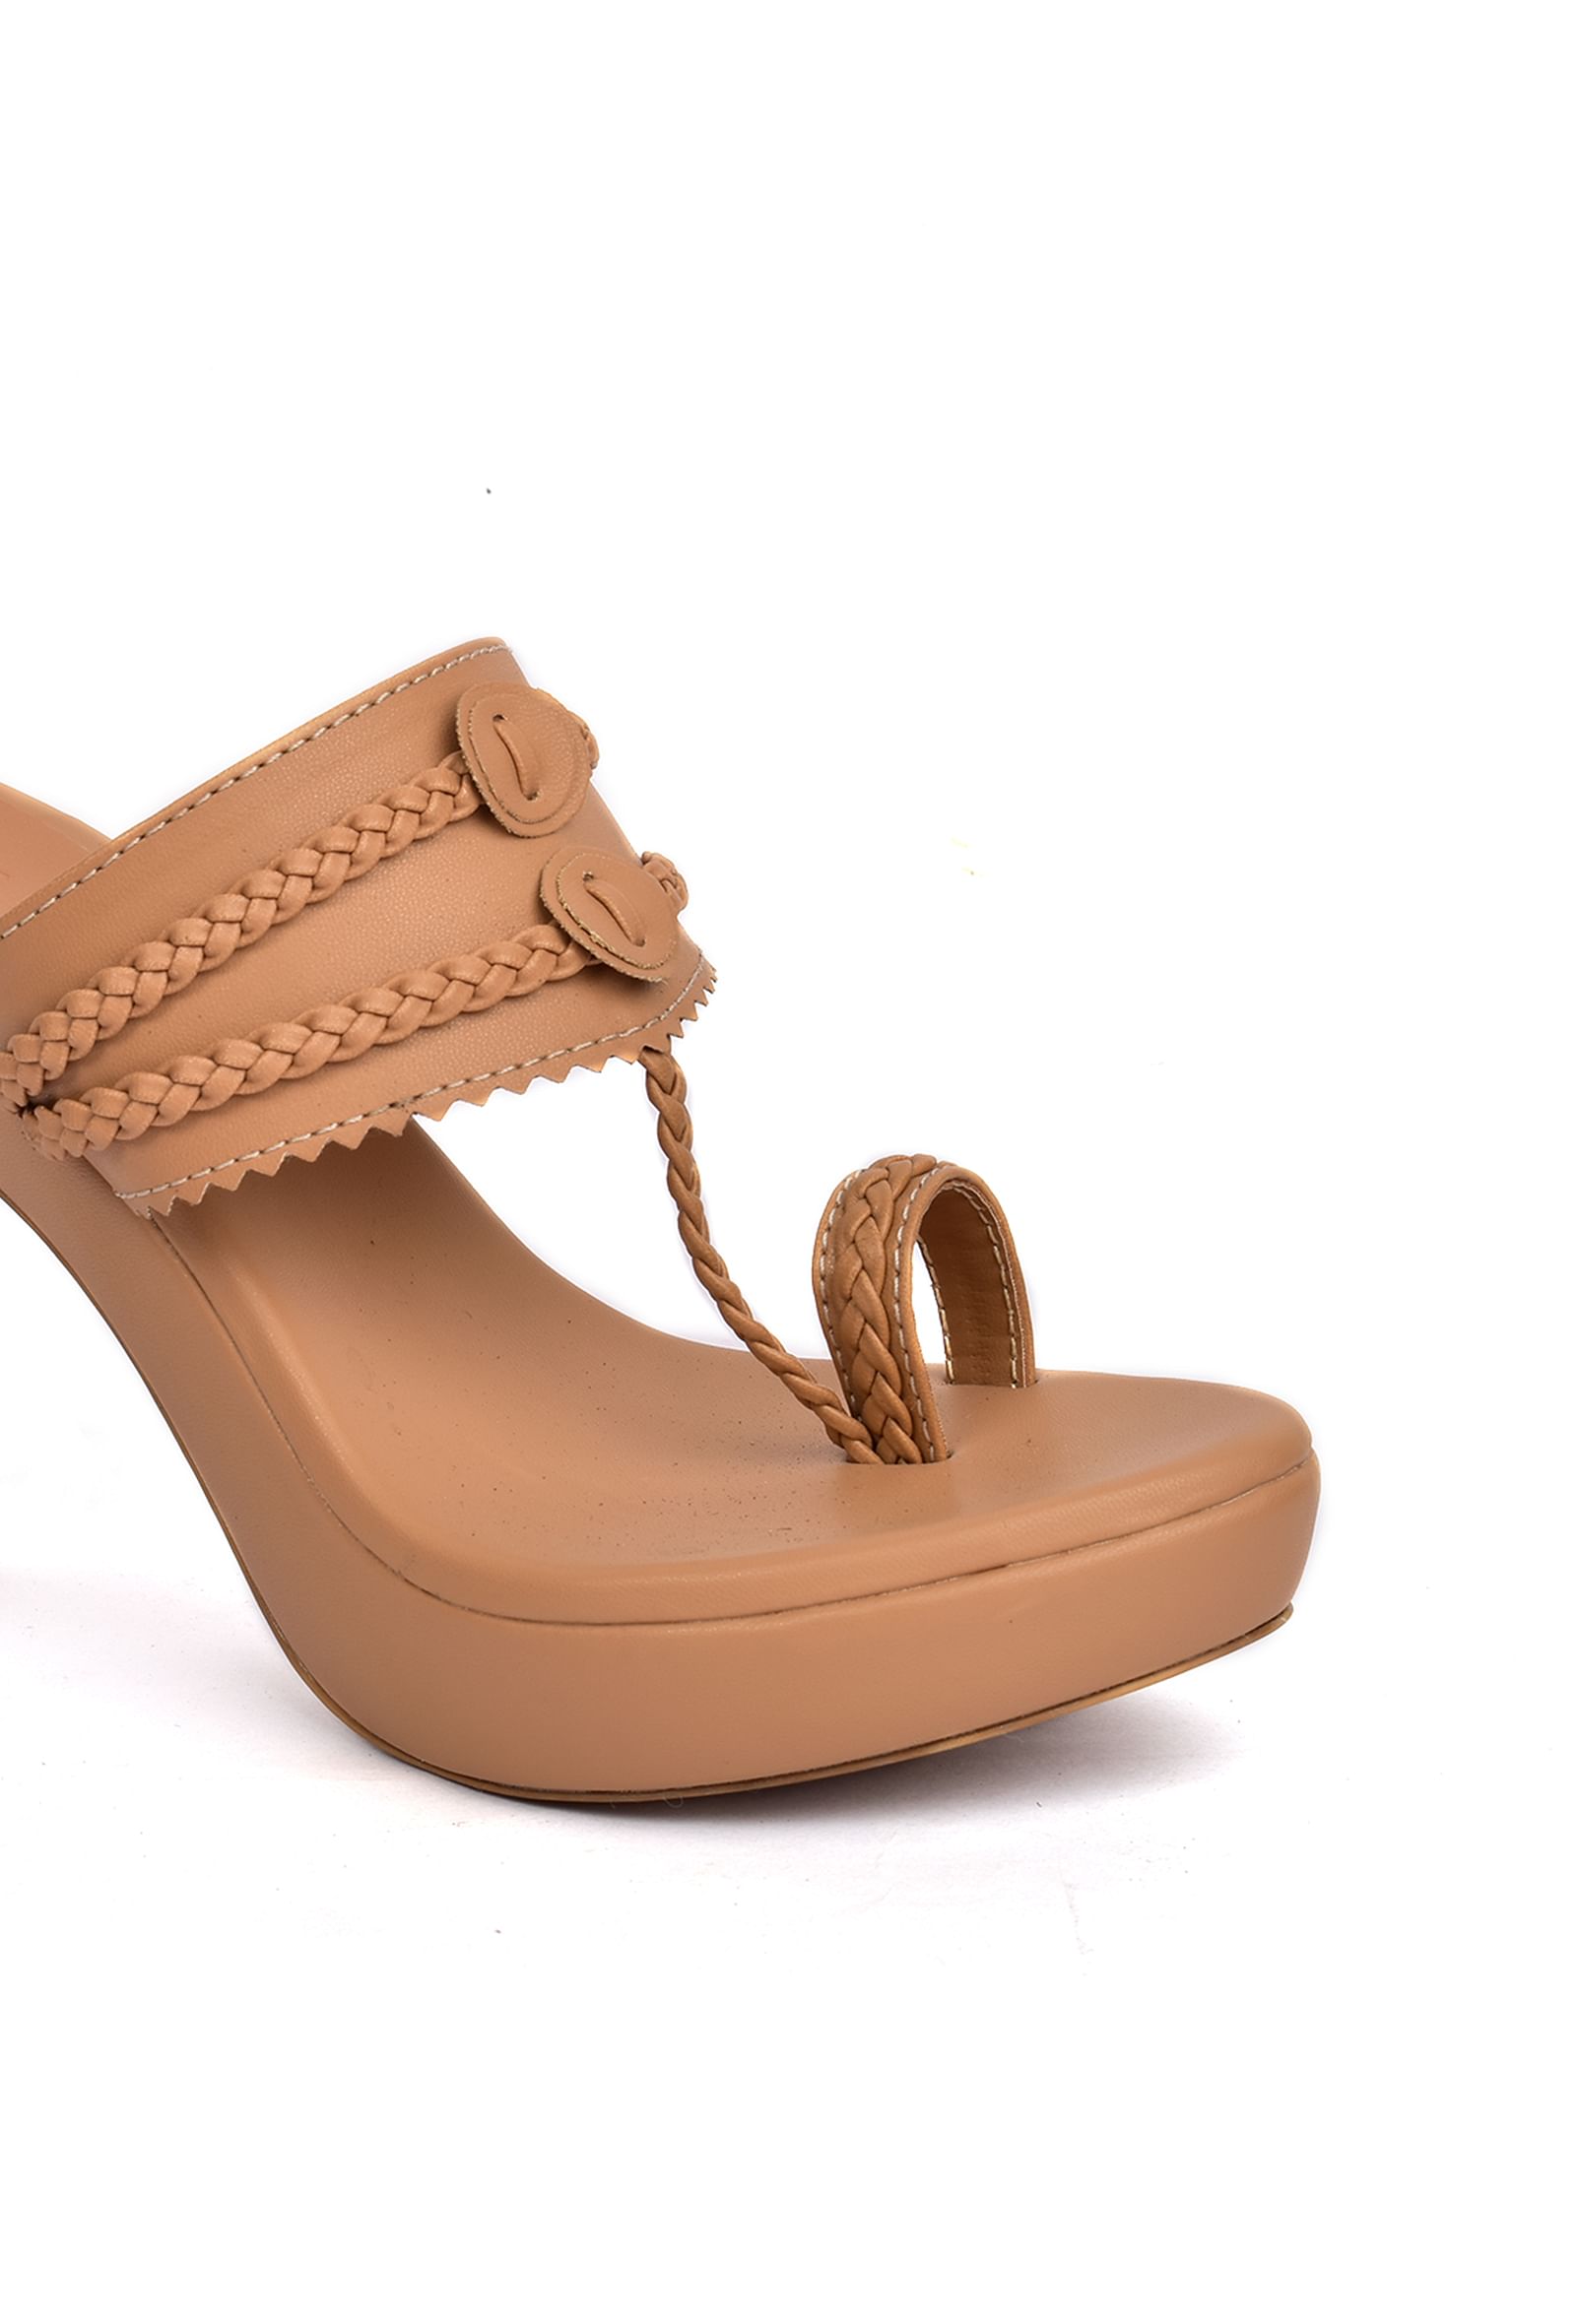 Buy Red Mukaish Kolhapuri Heels by PREET KAUR at Ogaan Market Online  Shopping Site